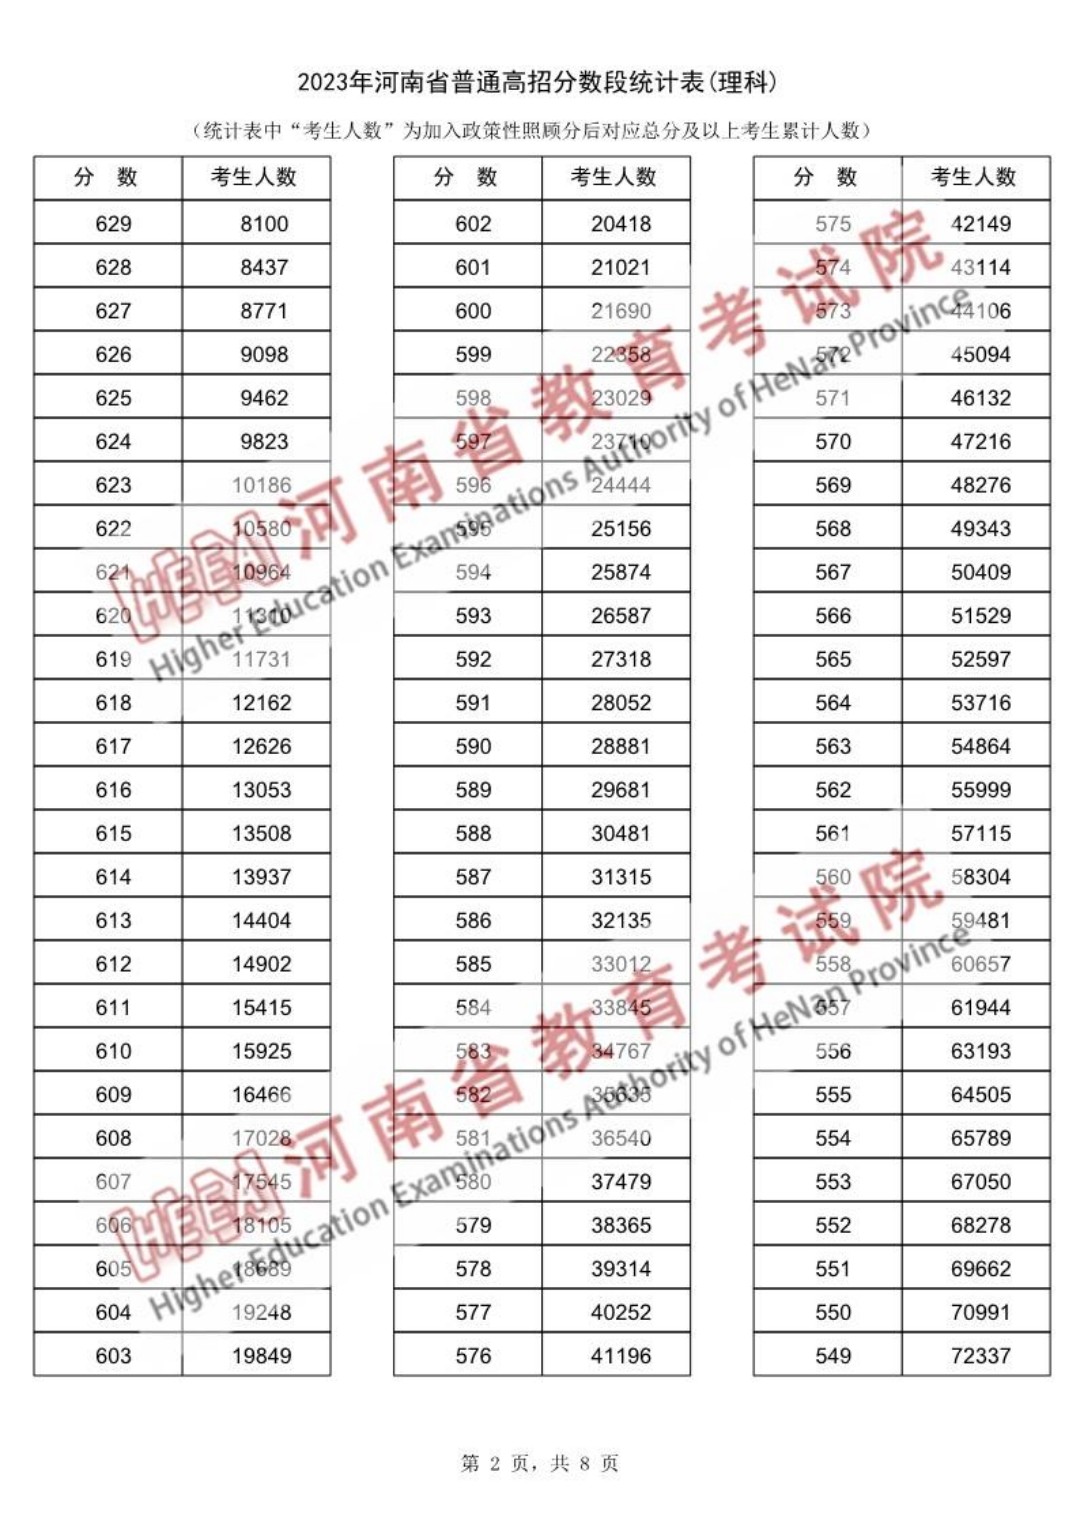 河南省2023年高考分数段统计表